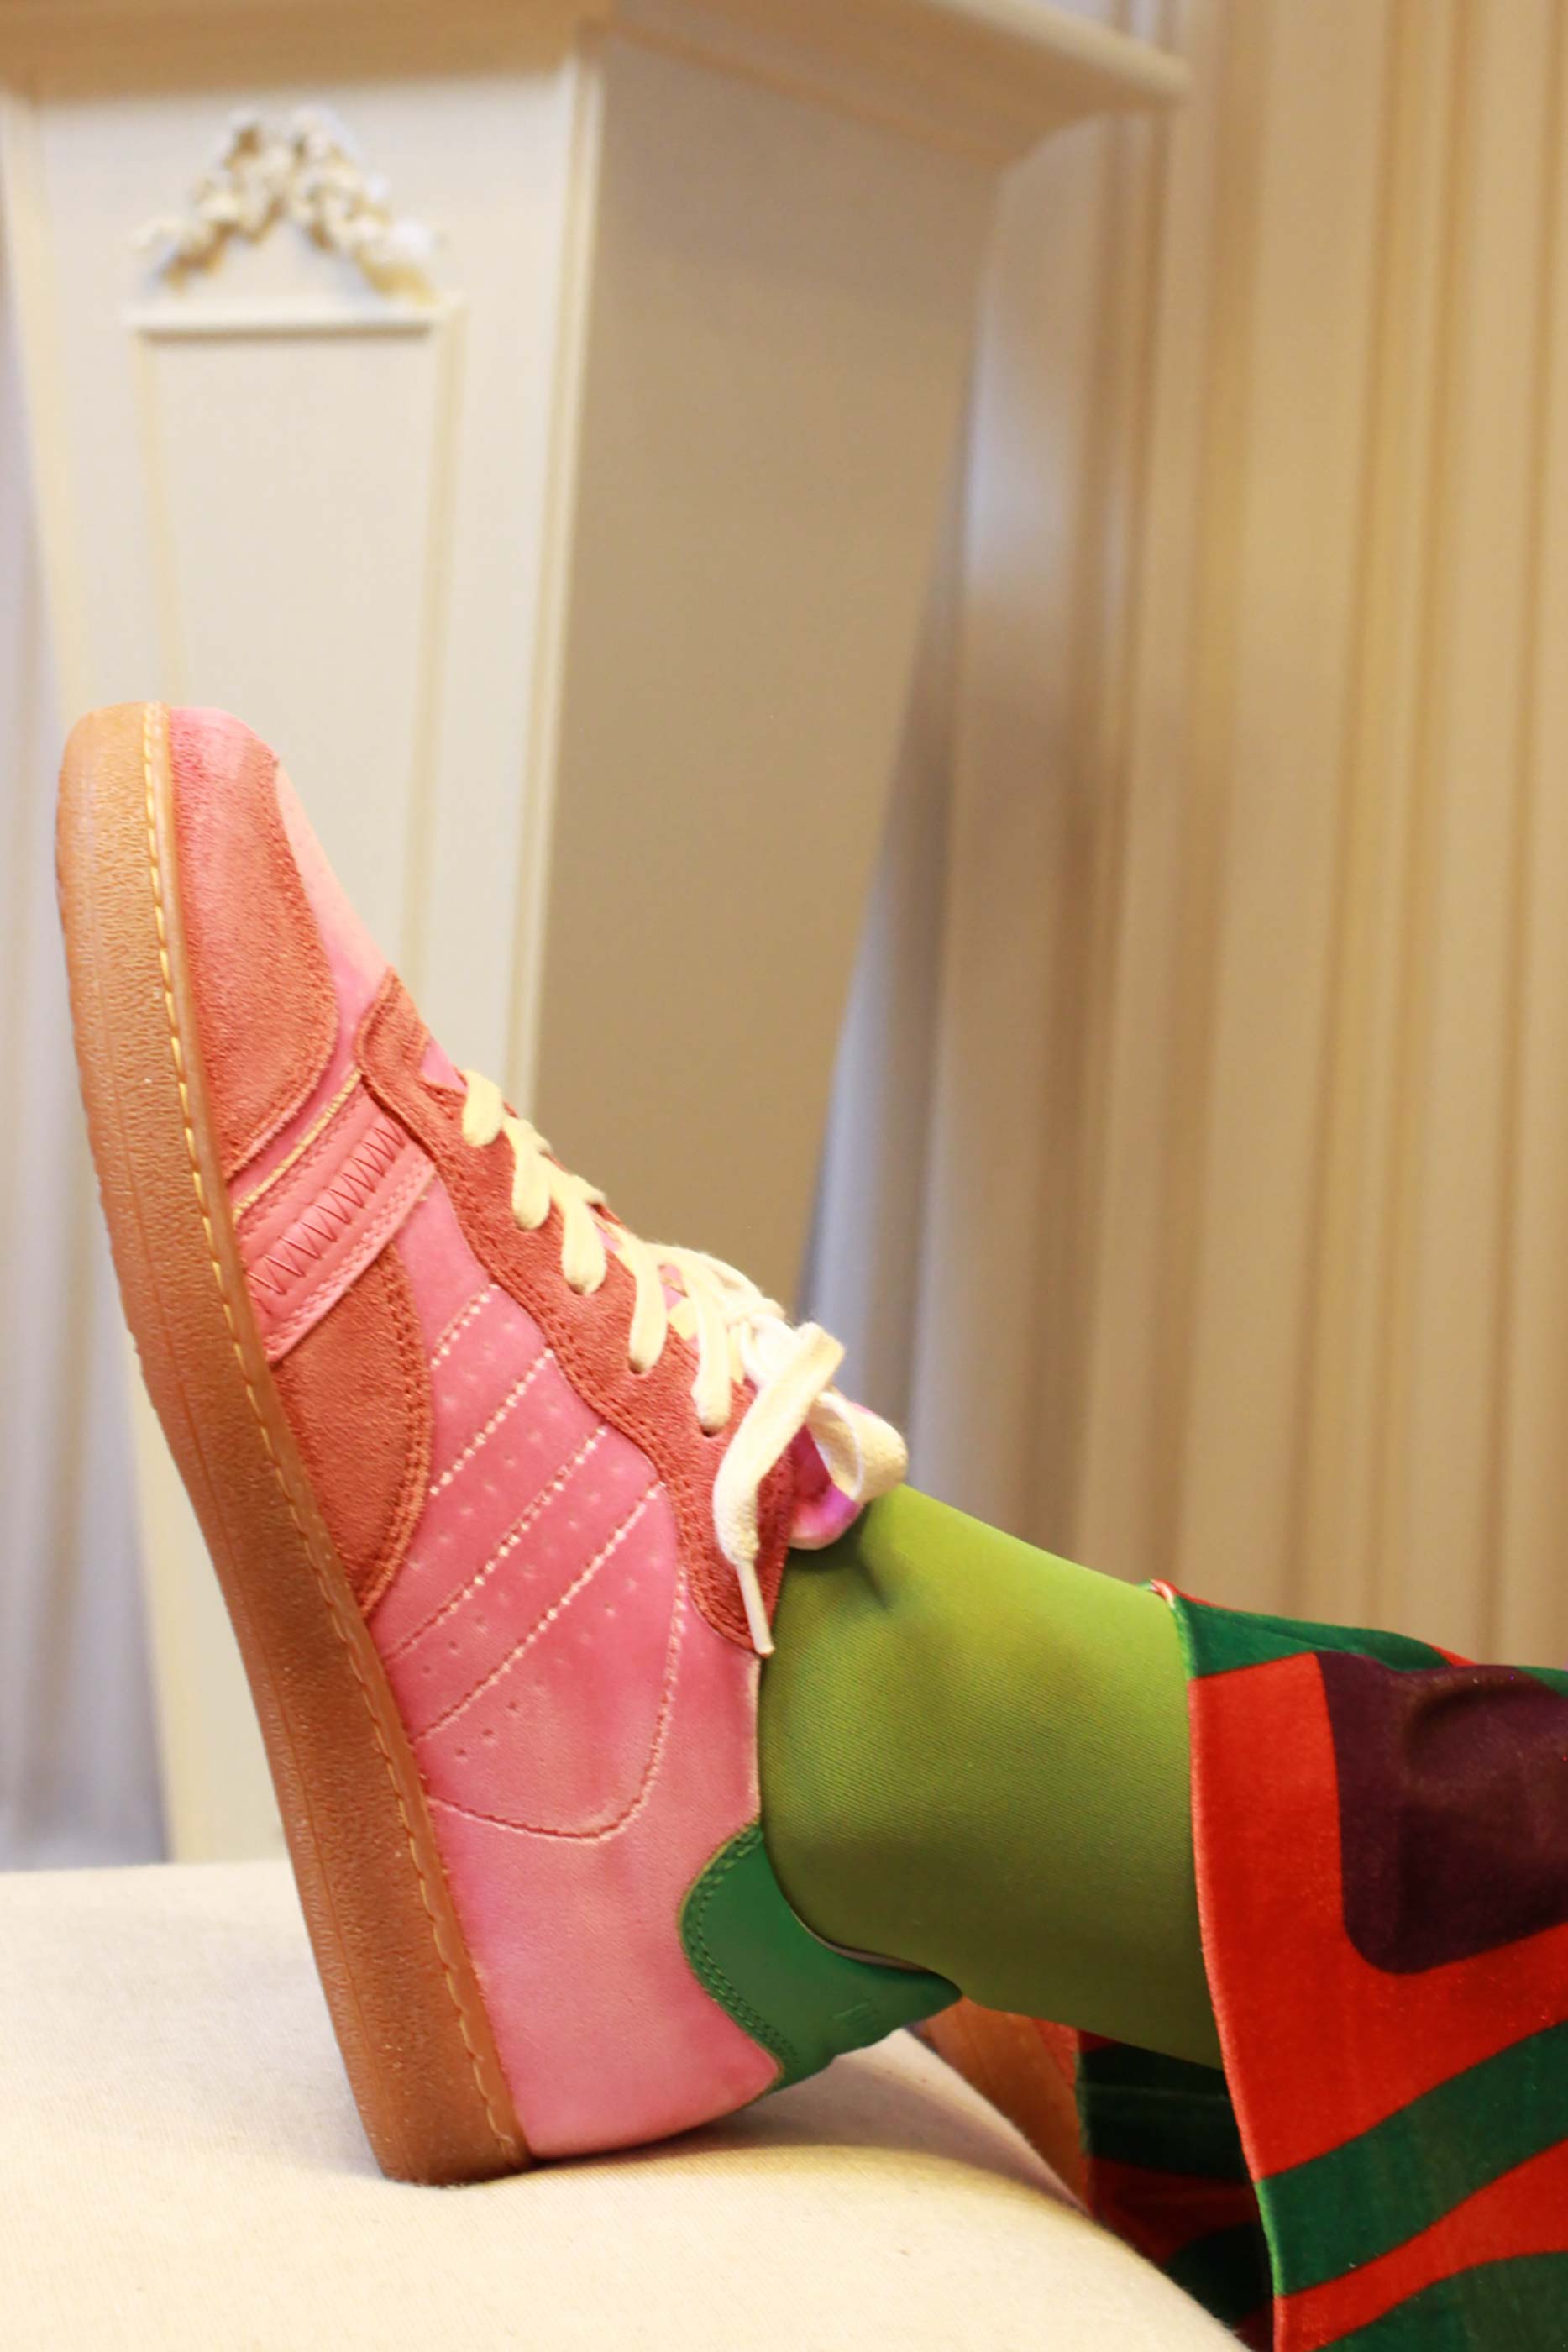 Sneakers sporty velvet pink di DATE modello gazzelle da donna fw23